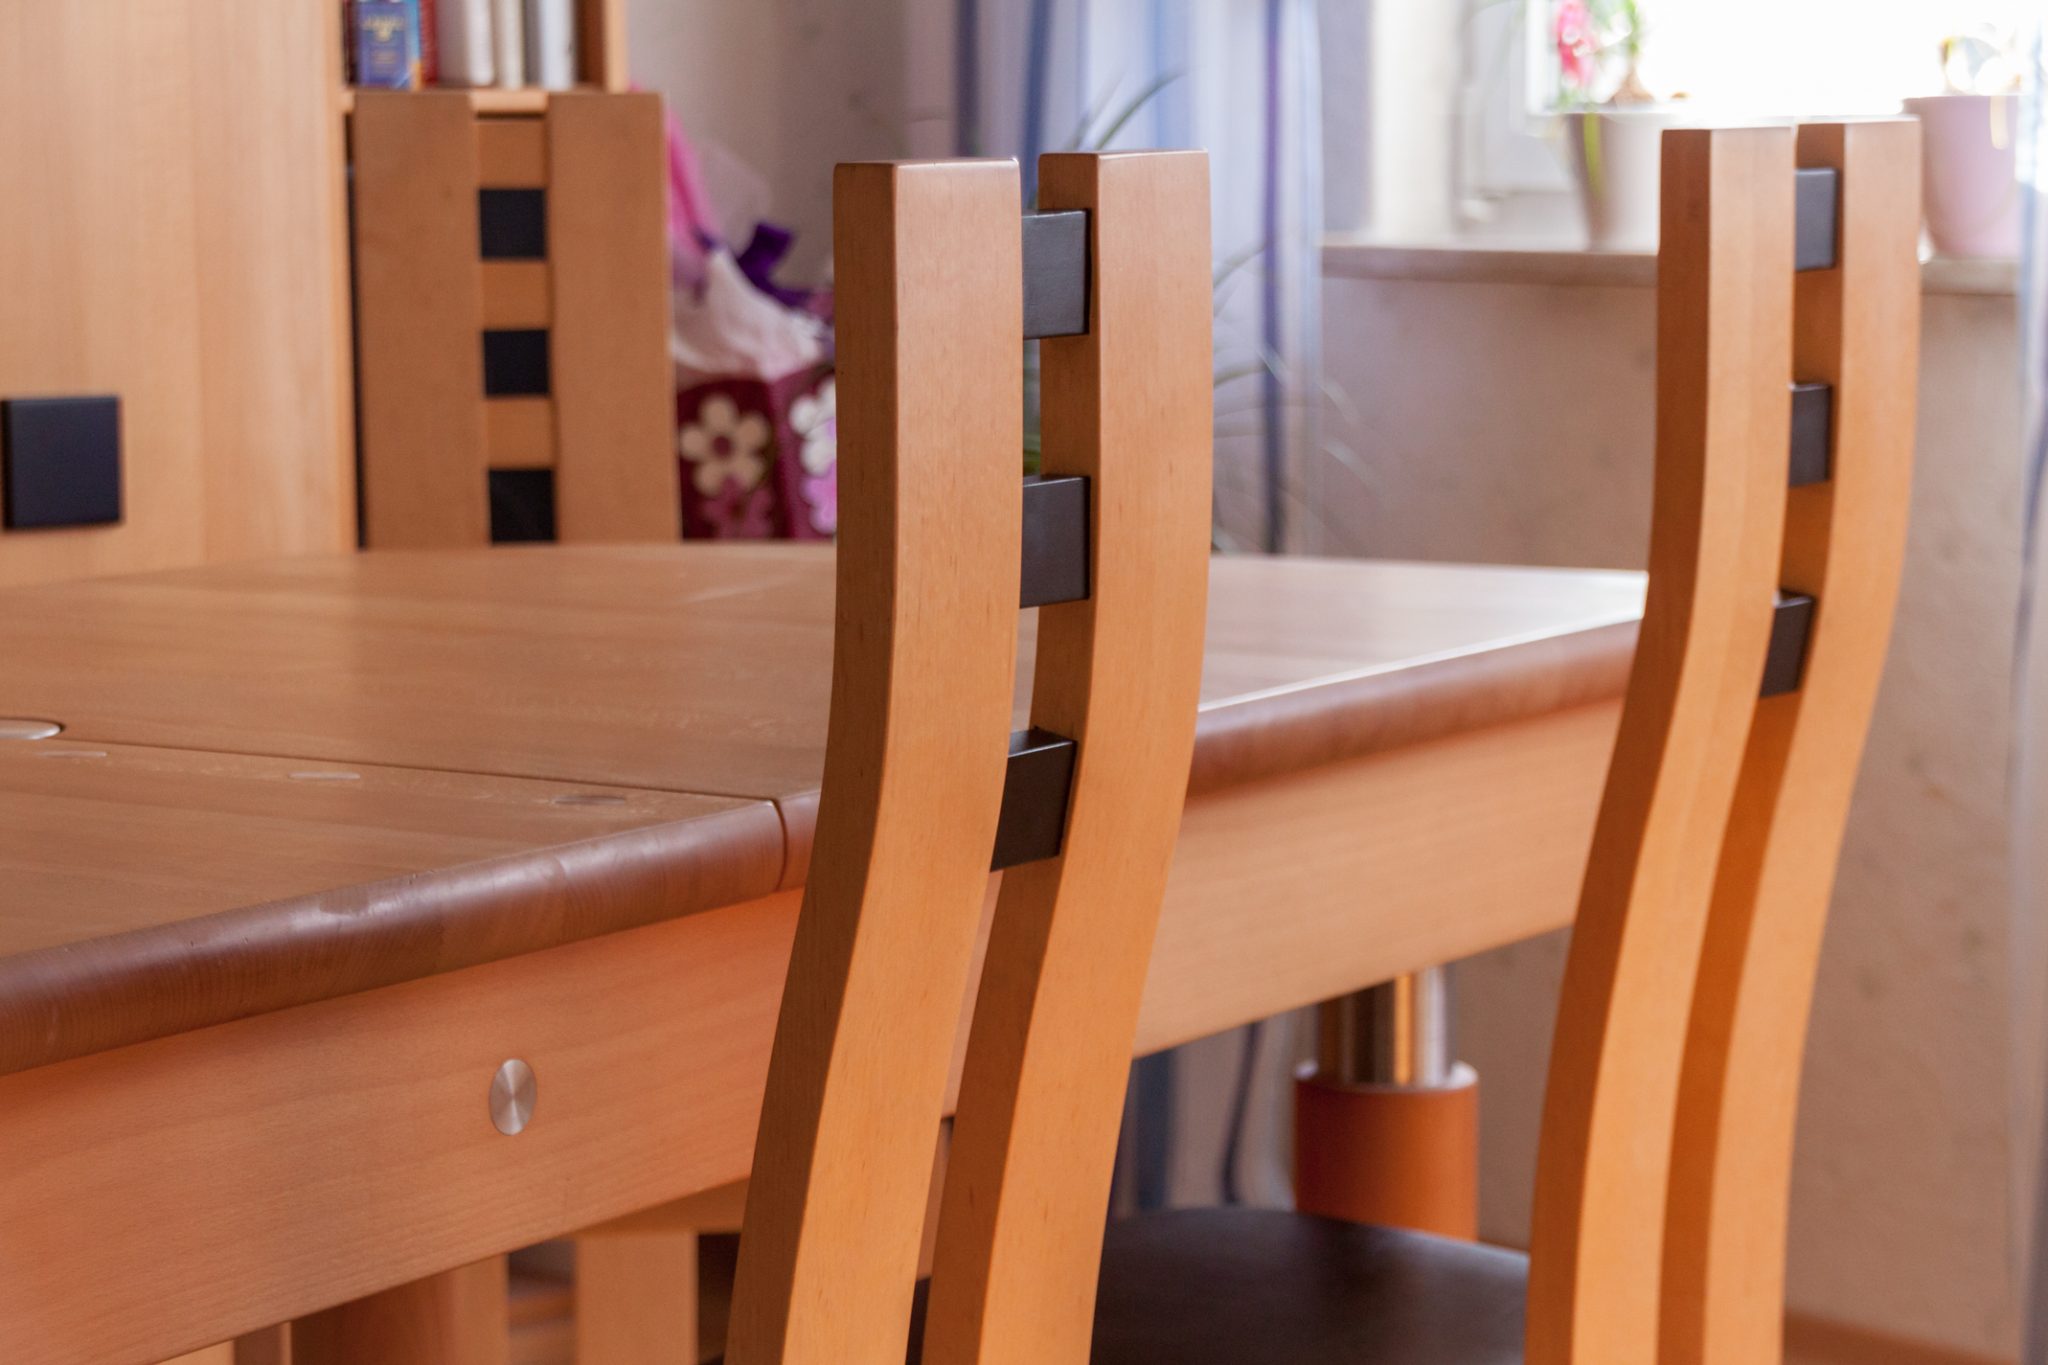 Detailaufnahme der leicht gebogenen Rückenlehne zweier Stühle aus der Xen-Serie der Schreinerei. Die Stuhle stehen an einem Holztisch in passender Optik.